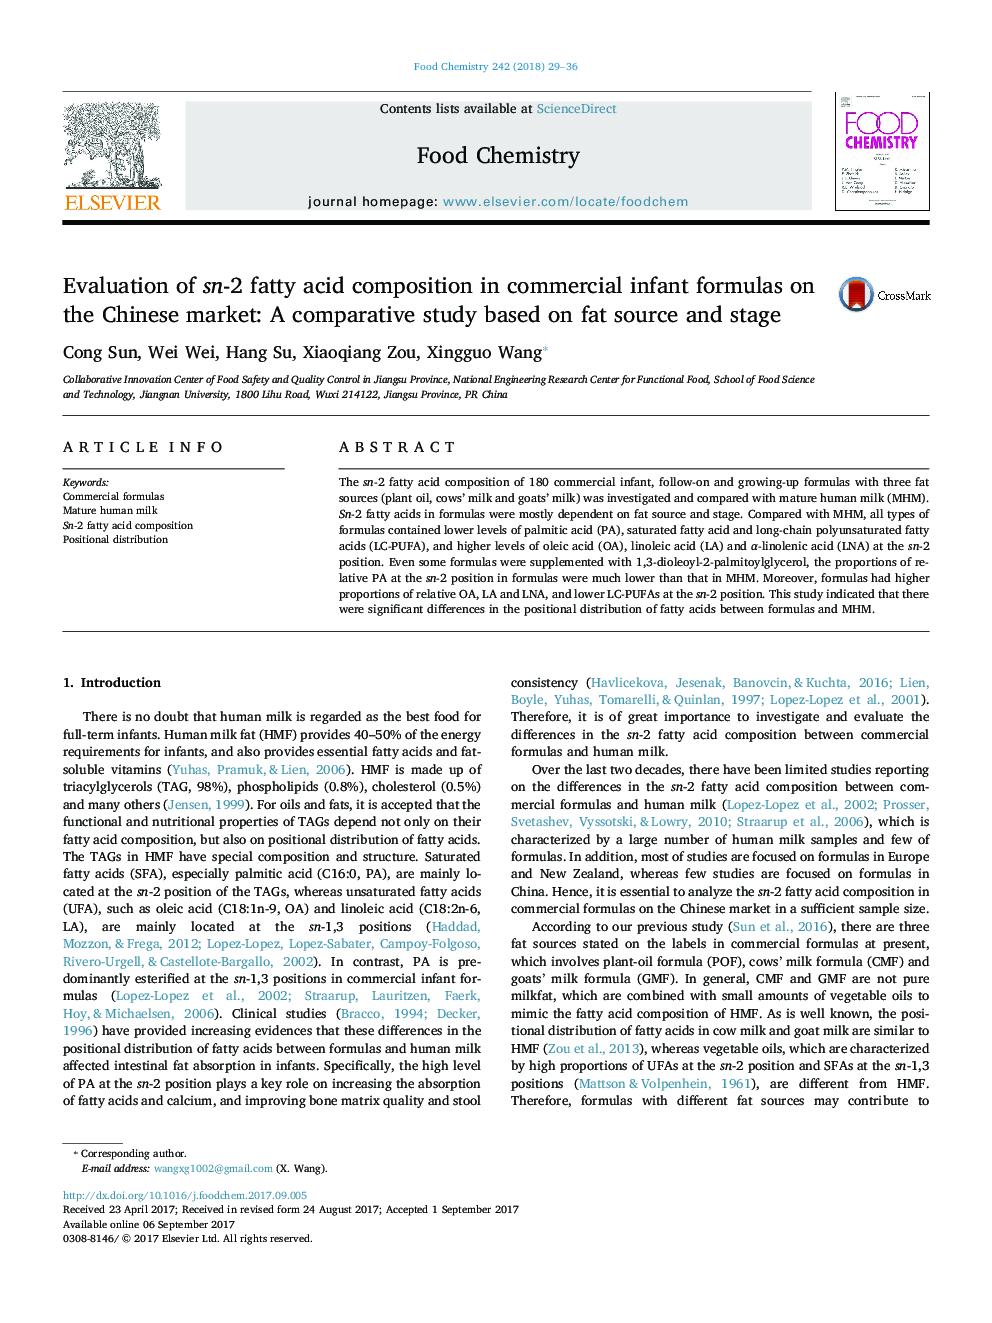 بررسی ترکیب اسید چرب اسناد 2 در فرمول های تجاری نوزادان در بازار چین: یک مطالعه مقایسه ای بر اساس منبع چربی و مرحله